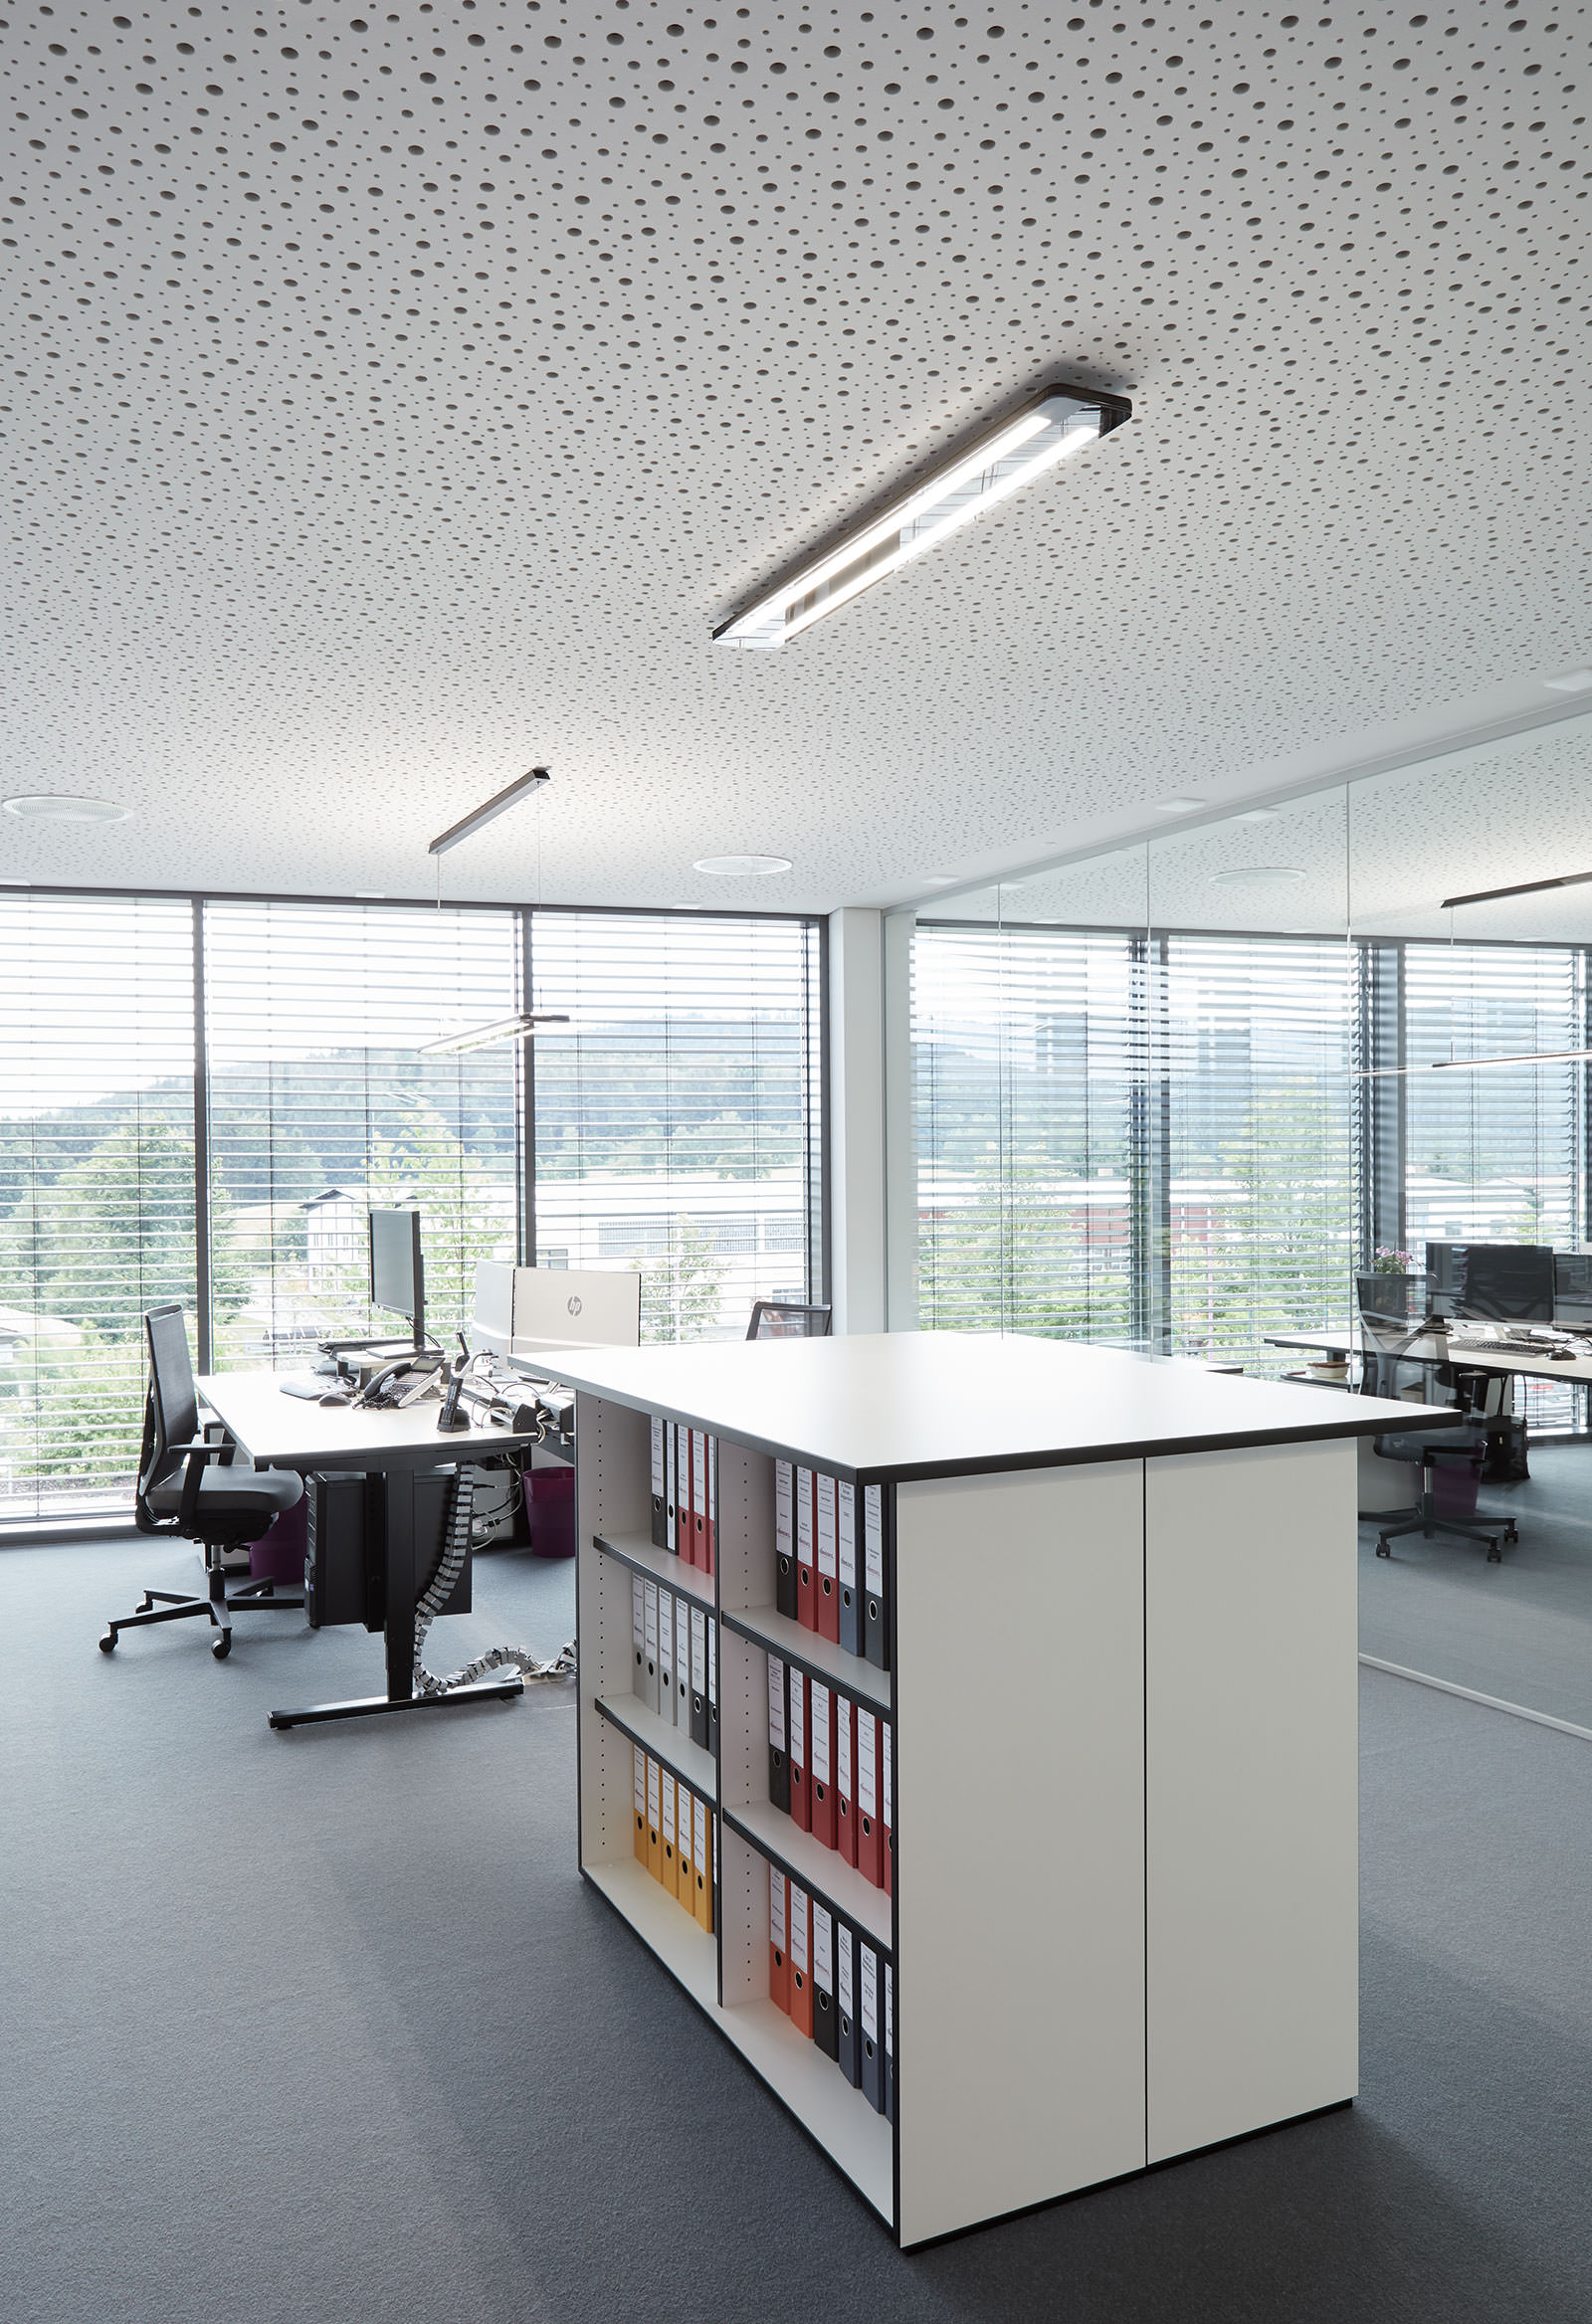 Interior Aufnahmen, Weikl GmbH & Co. KG für LTS Licht & Leuchten GmbH, Katalog 2019